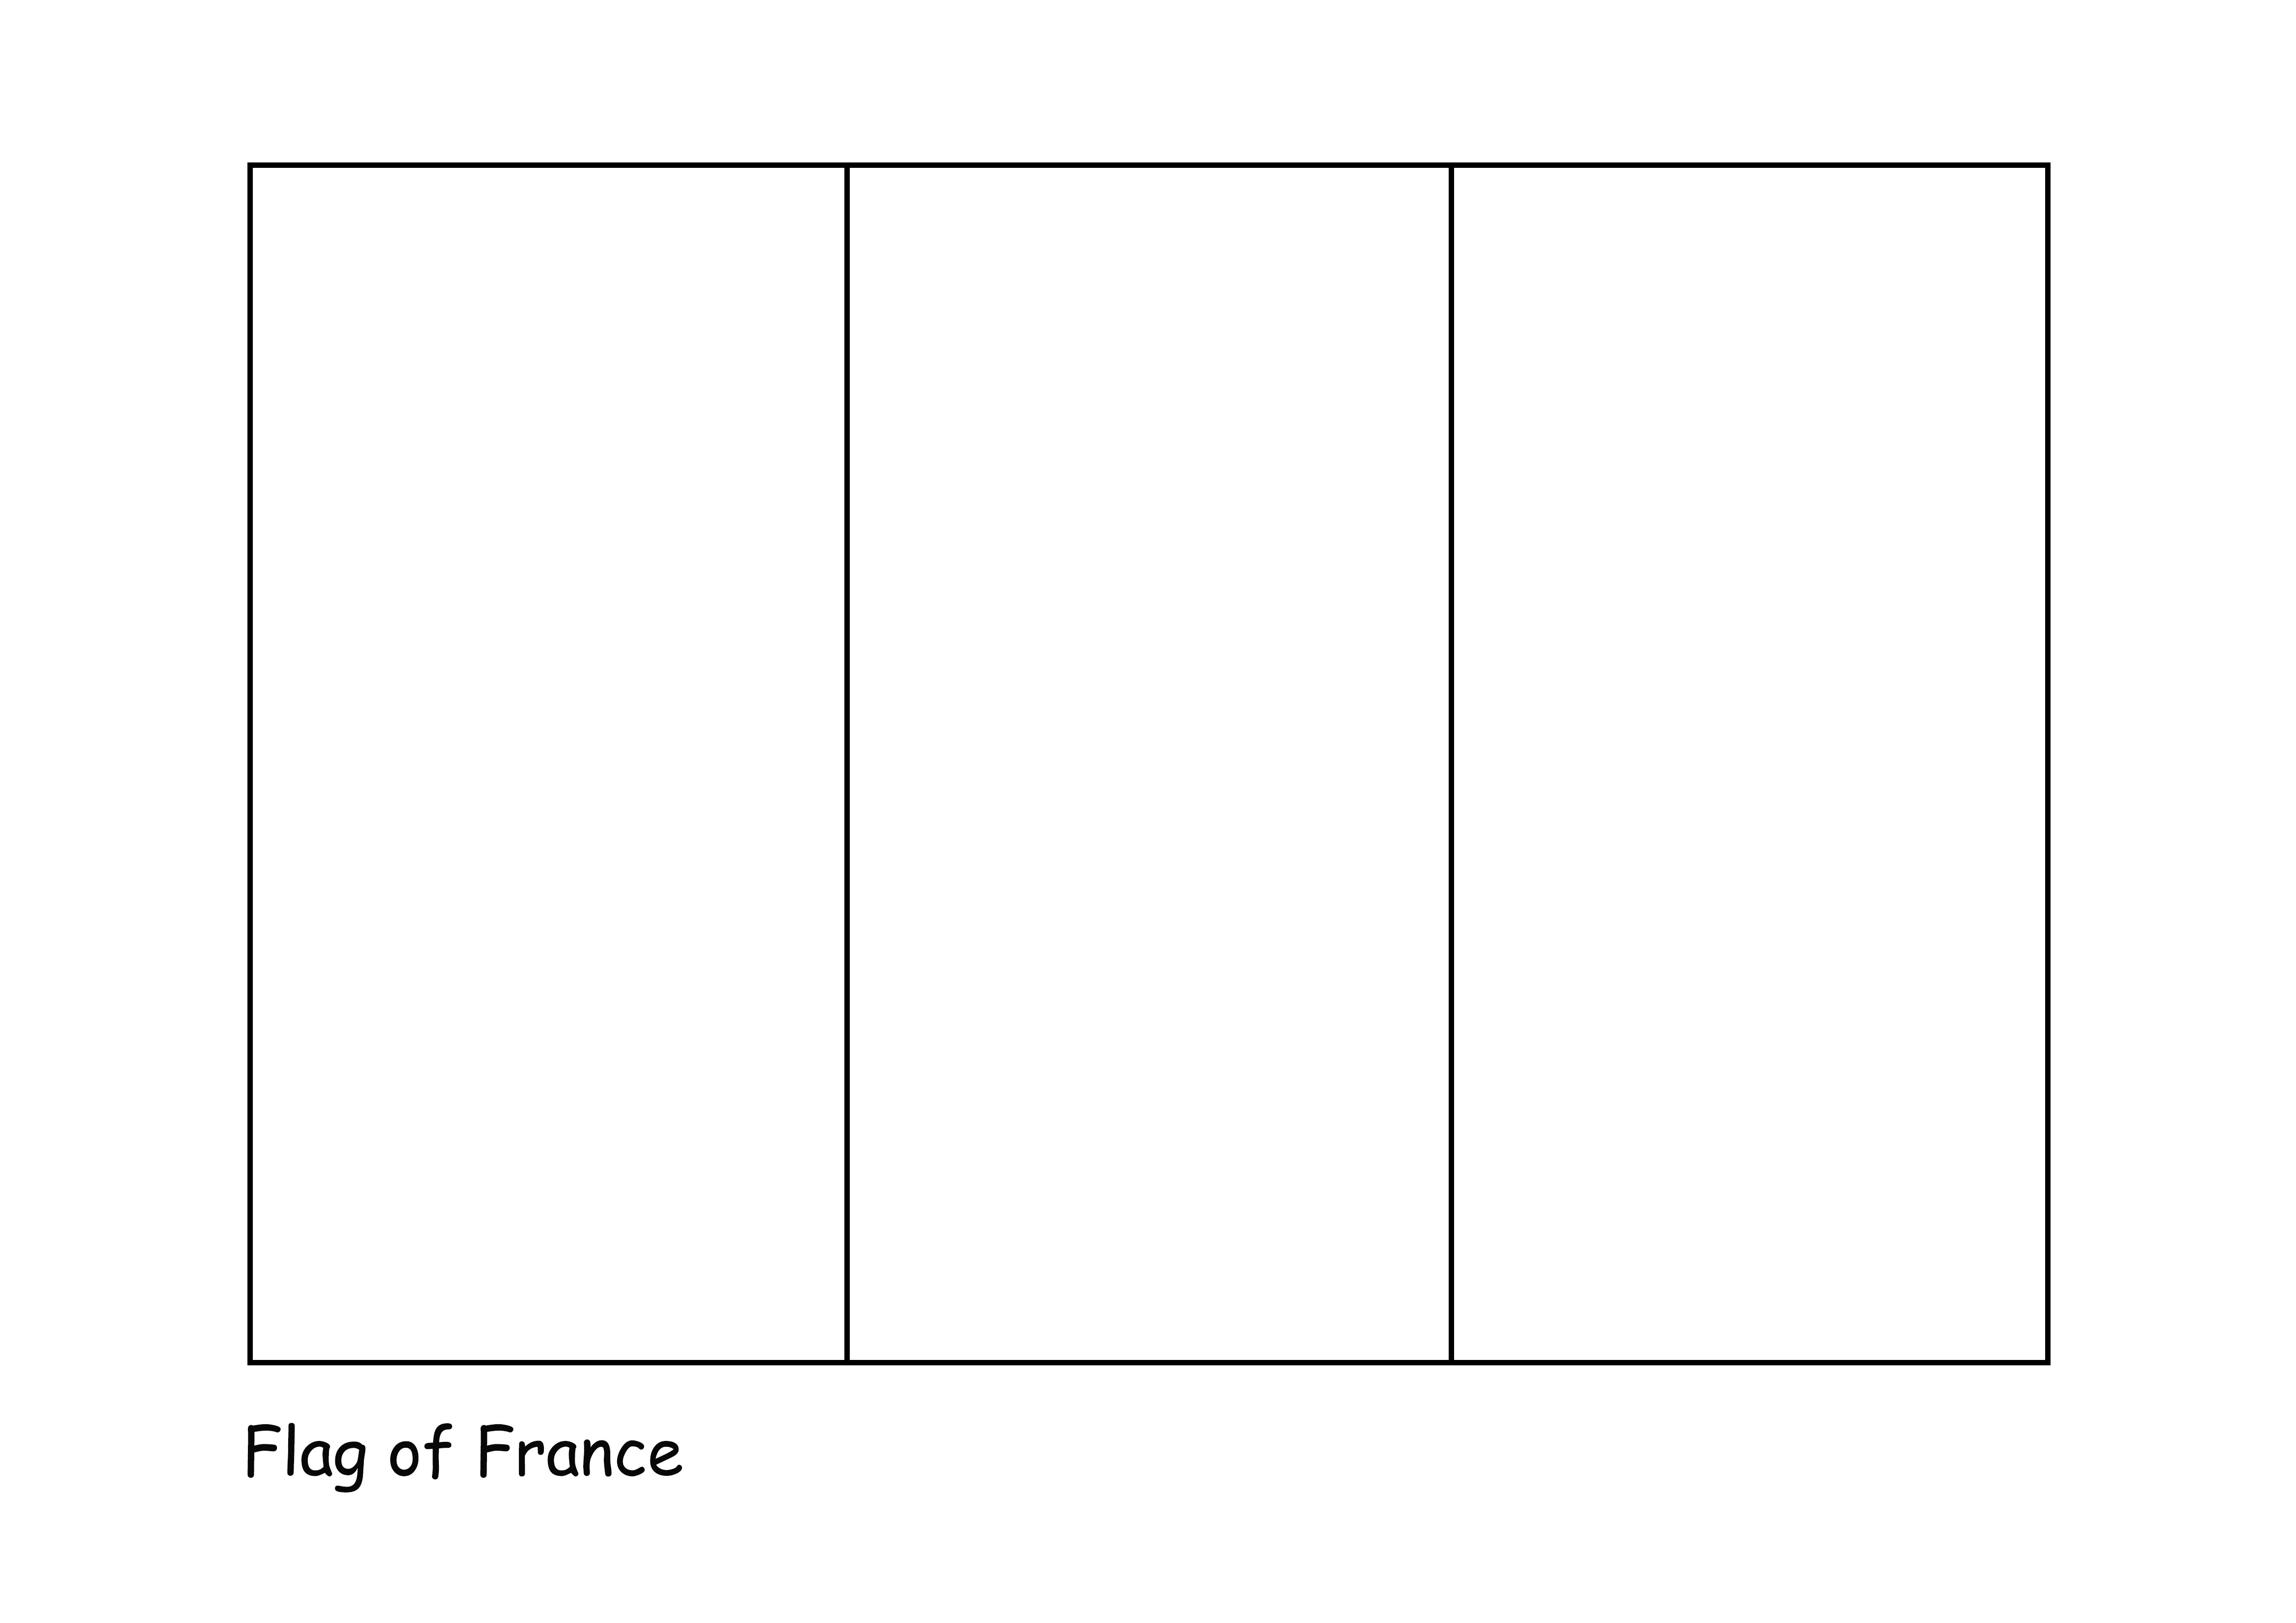 Pewarnaan sederhana dan halaman pencetakan Bendera Prancis gratis untuk anak-anak